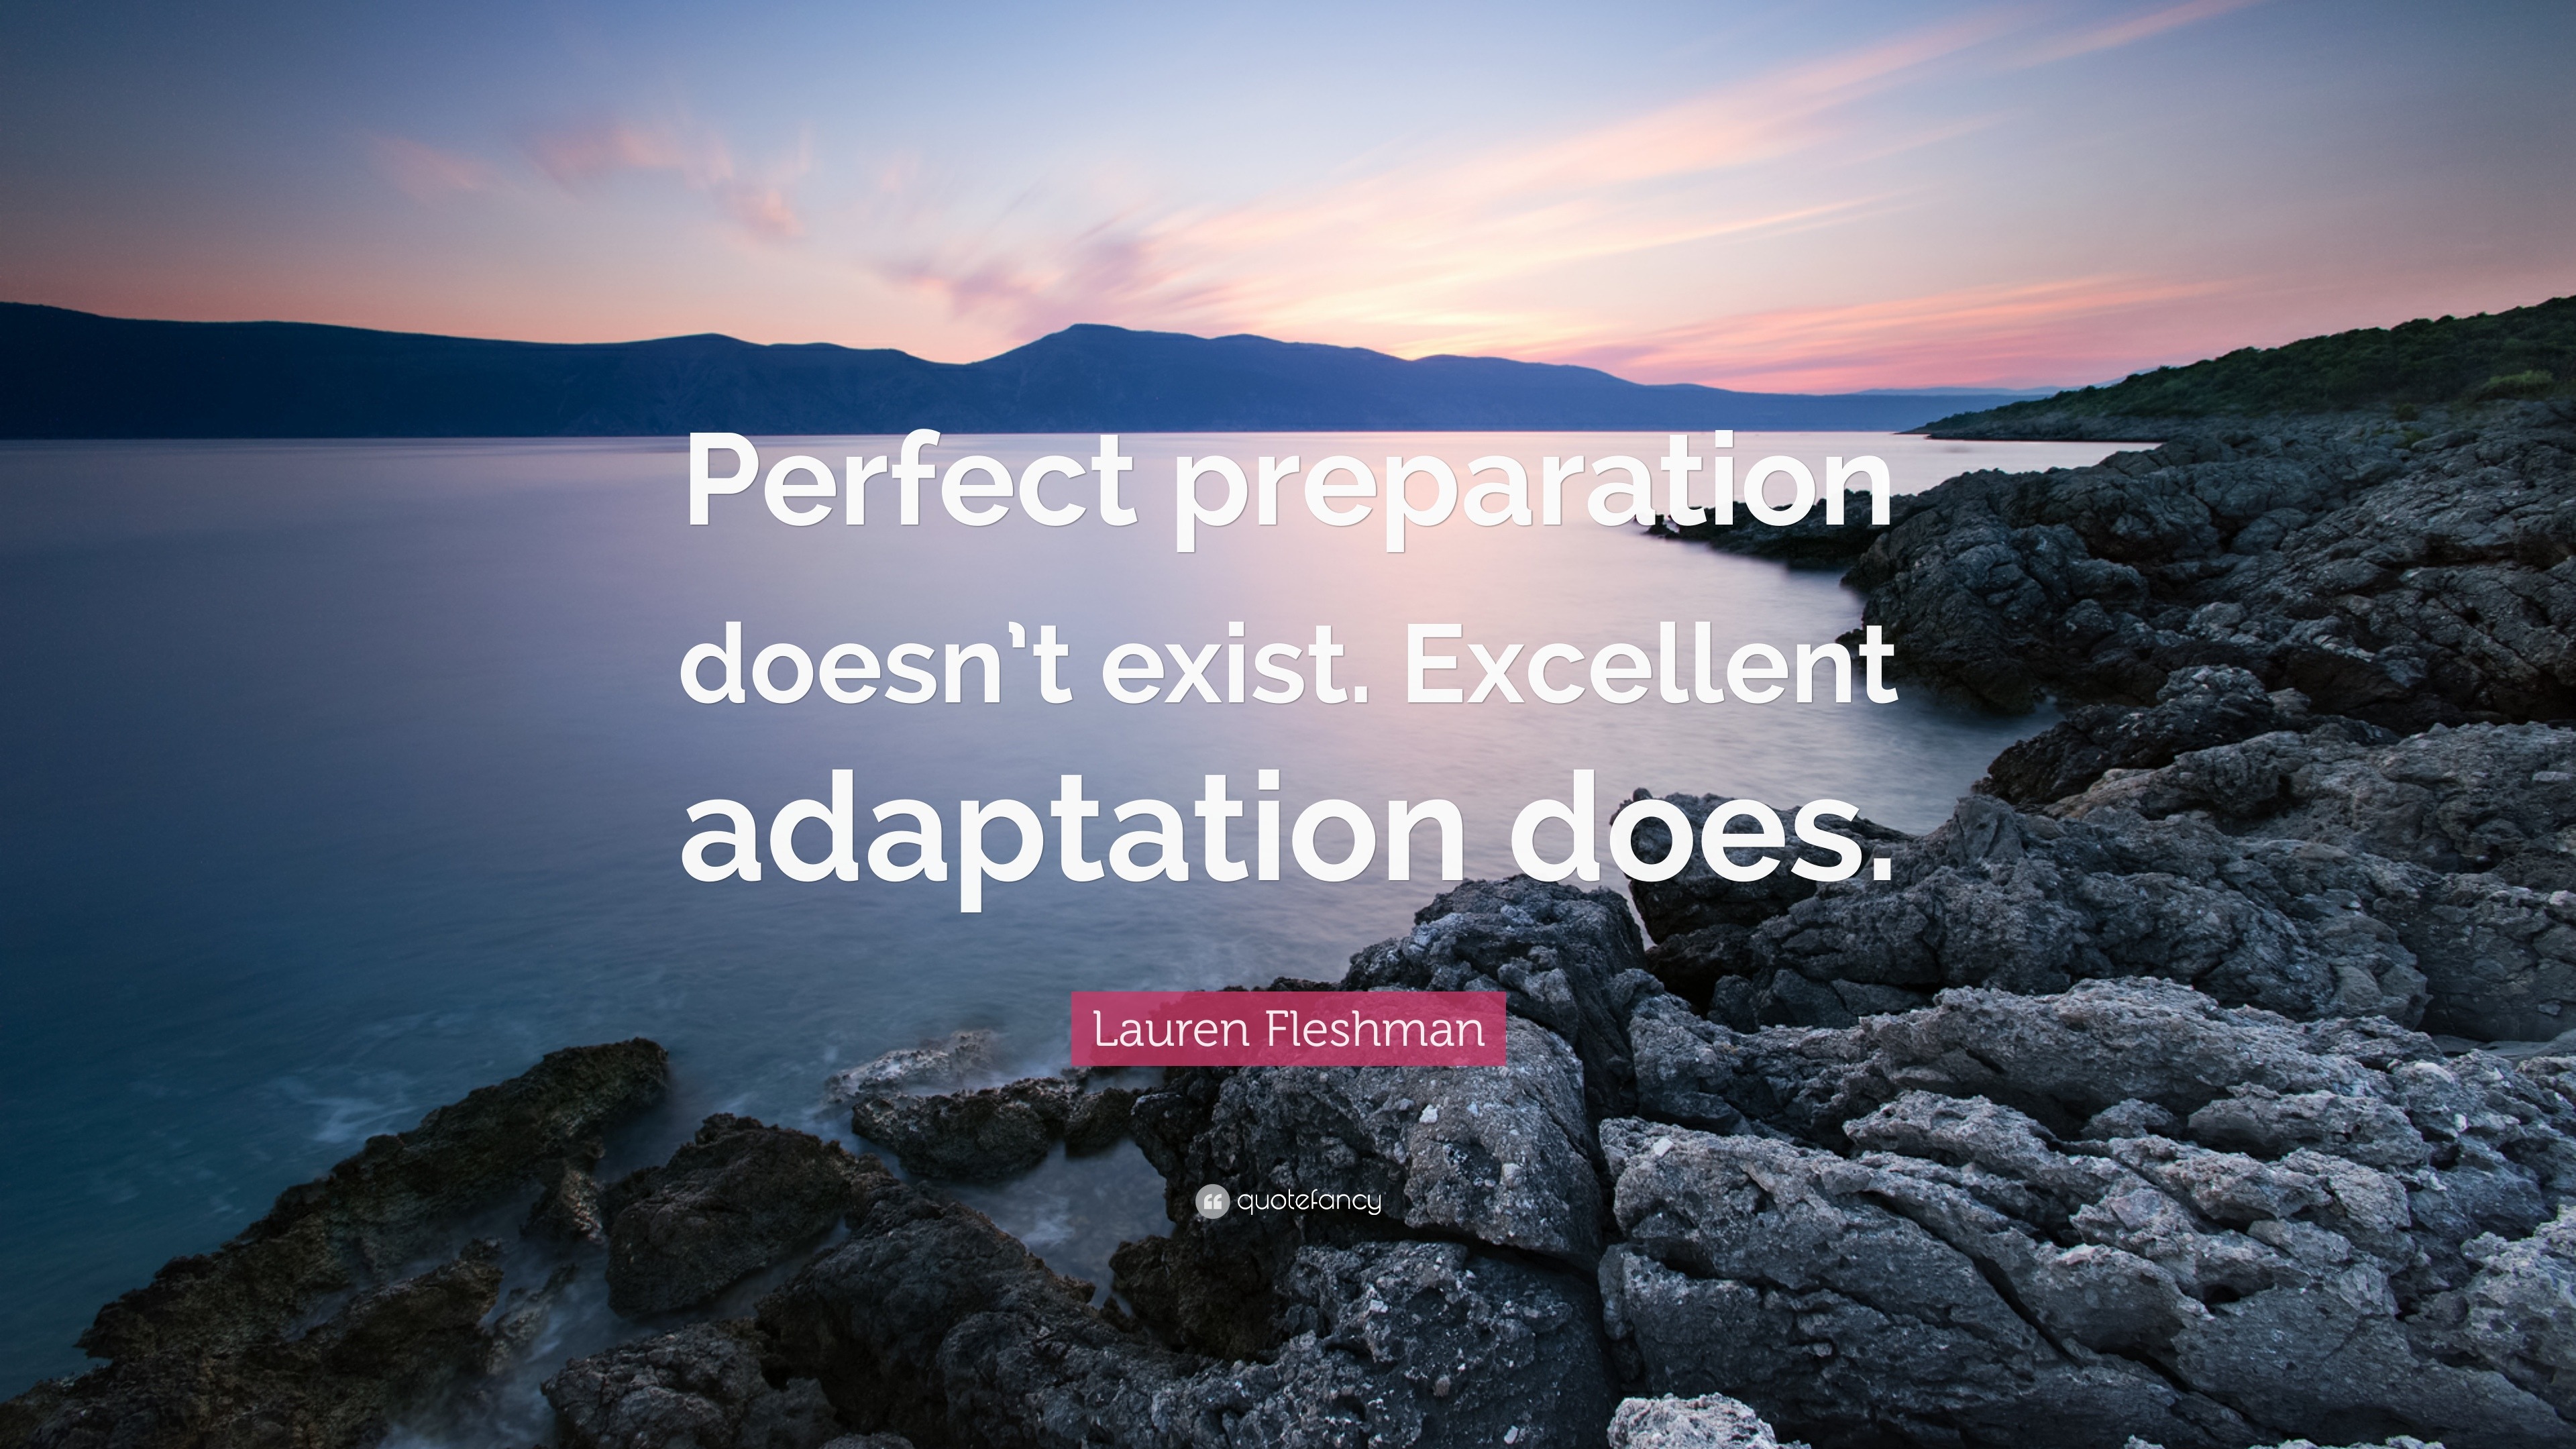 https://quotefancy.com/media/wallpaper/3840x2160/1506491-Lauren-Fleshman-Quote-Perfect-preparation-doesn-t-exist-Excellent.jpg